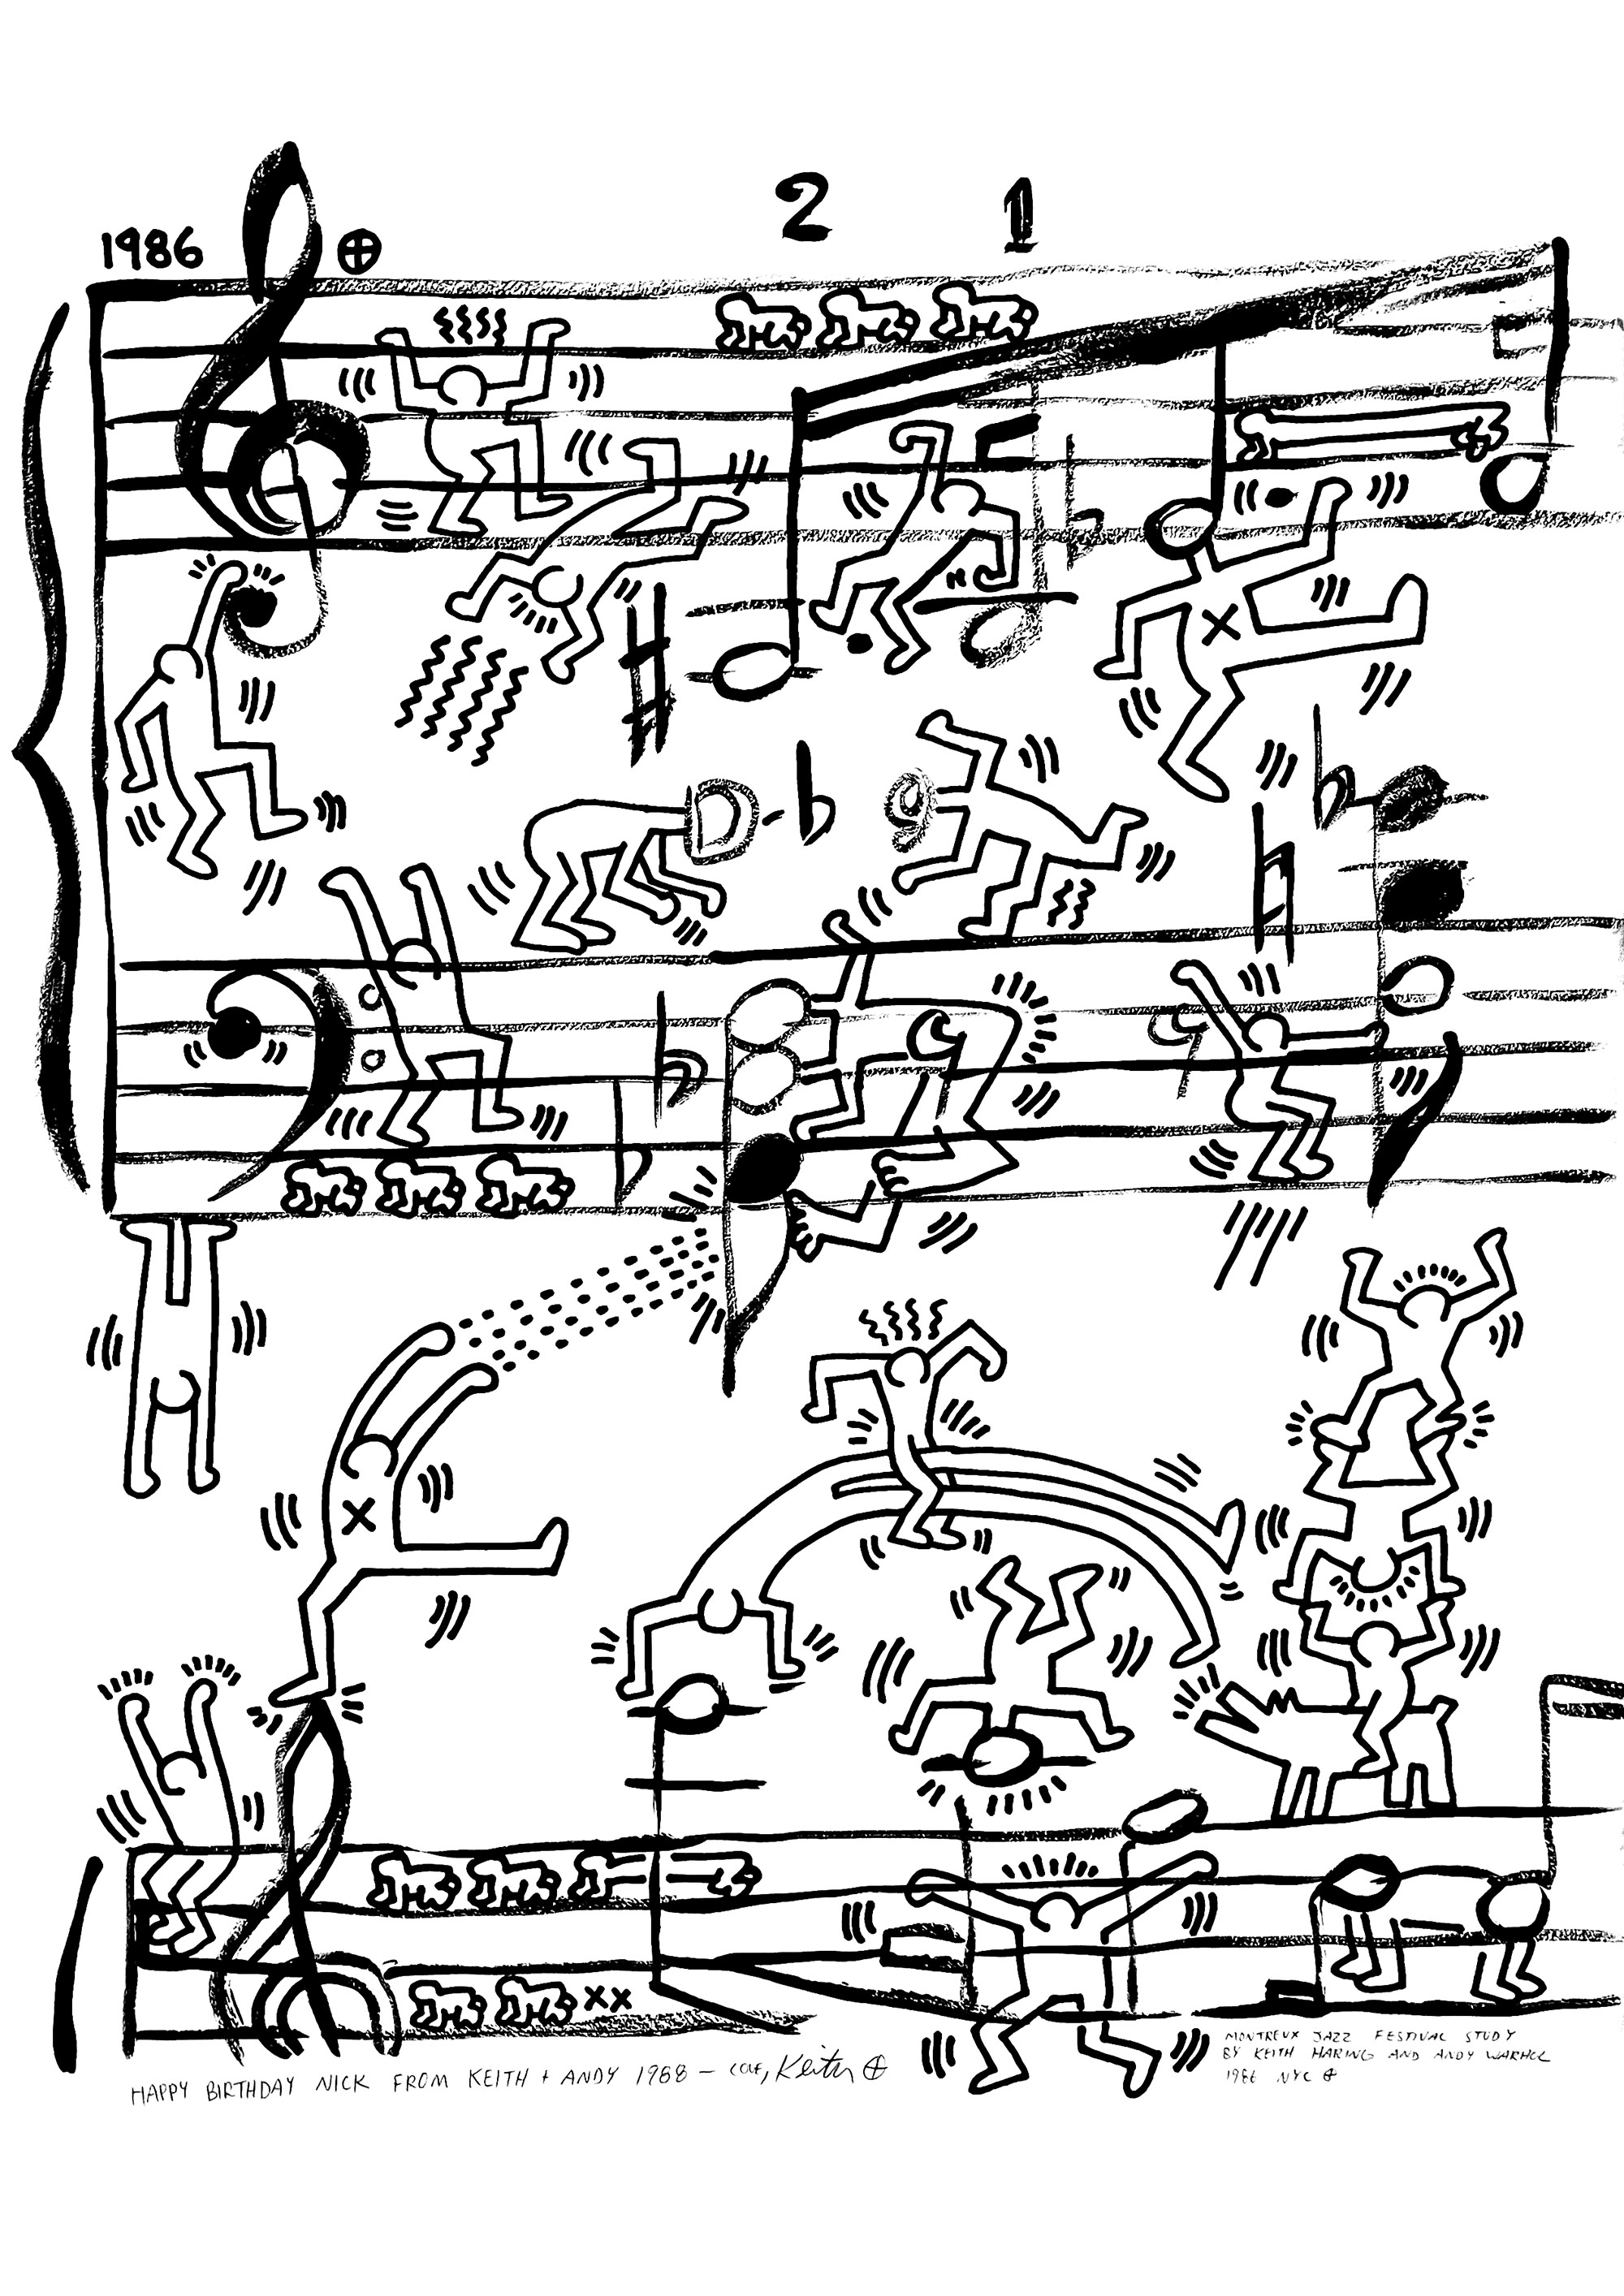 Proyecto de cartel para el Festival de Jazz de Montreux de Andy Warhol y Keith Haring, 1986. La amistad de Keith Haring con Andy Warhol ha tenido un profundo impacto en su obra. Tras su primer encuentro en la galería Tony Shafrazi en 1984, Keith Haring introdujo a Andy Warhol en la escena creativa de Manhattan, un entorno que siguió inspirando al padre fundador del Pop Art a lo largo de toda su carrera.